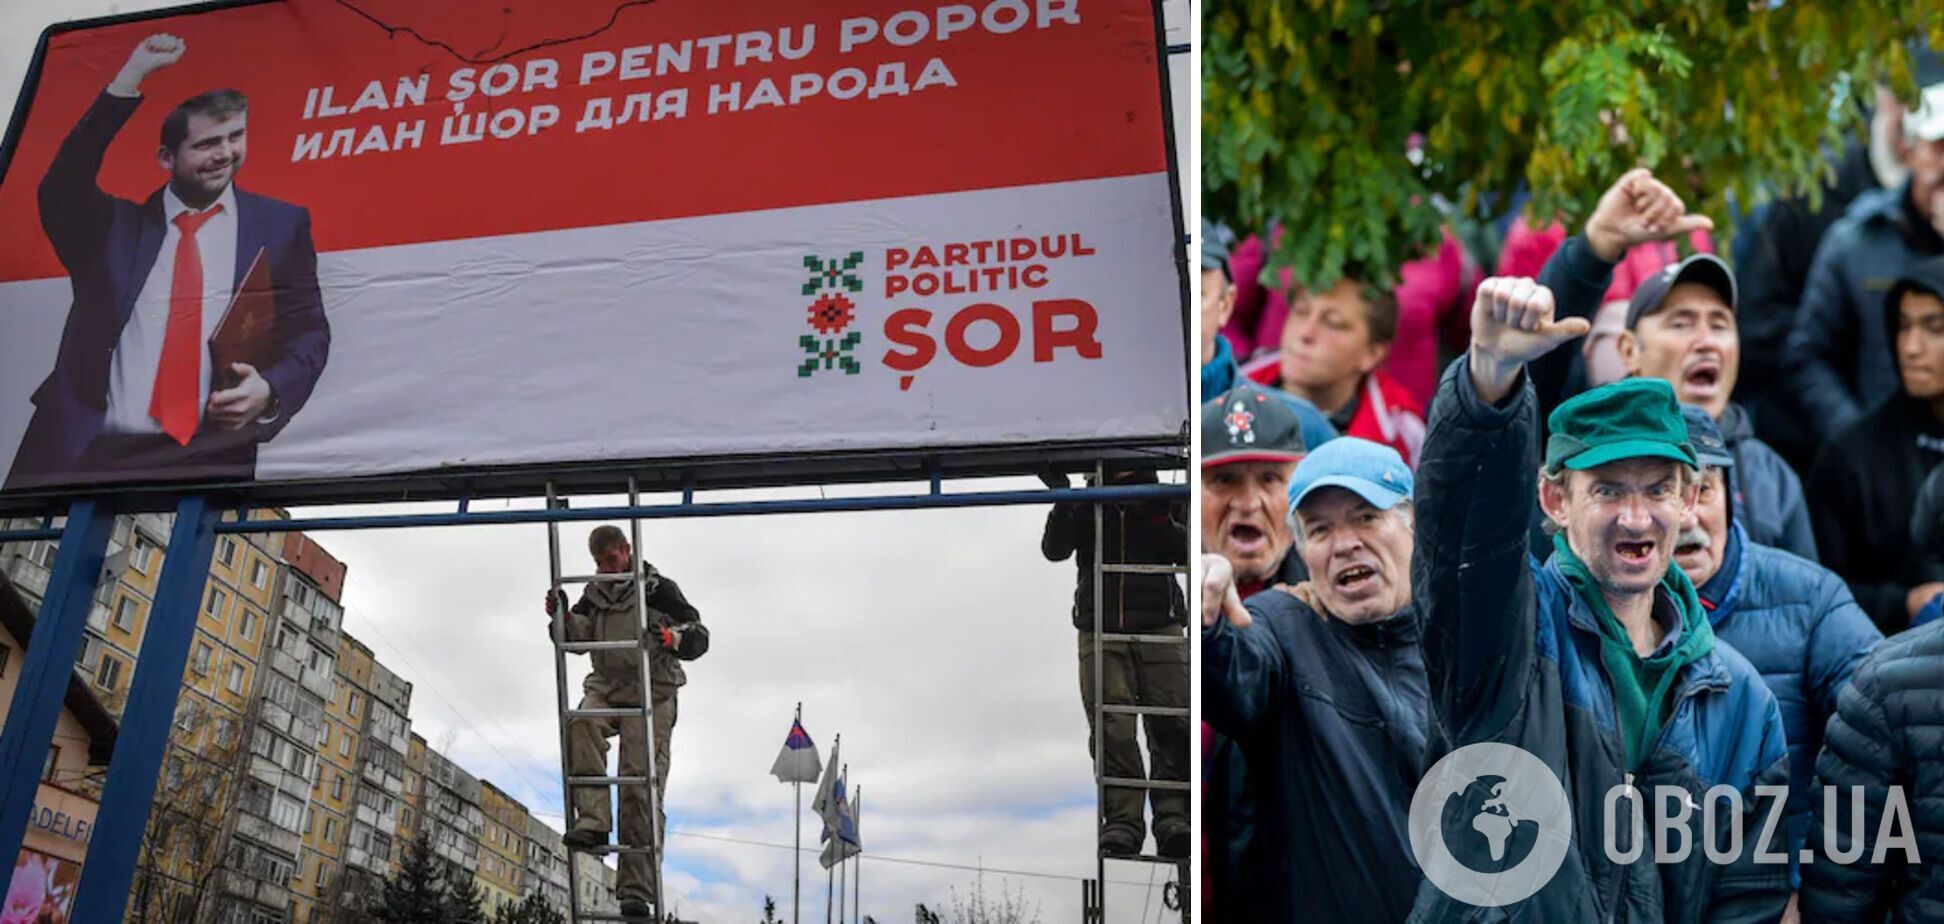 ФСБ готовит госпереворот в Молдове с помощью пророссийского политика Илана Шора